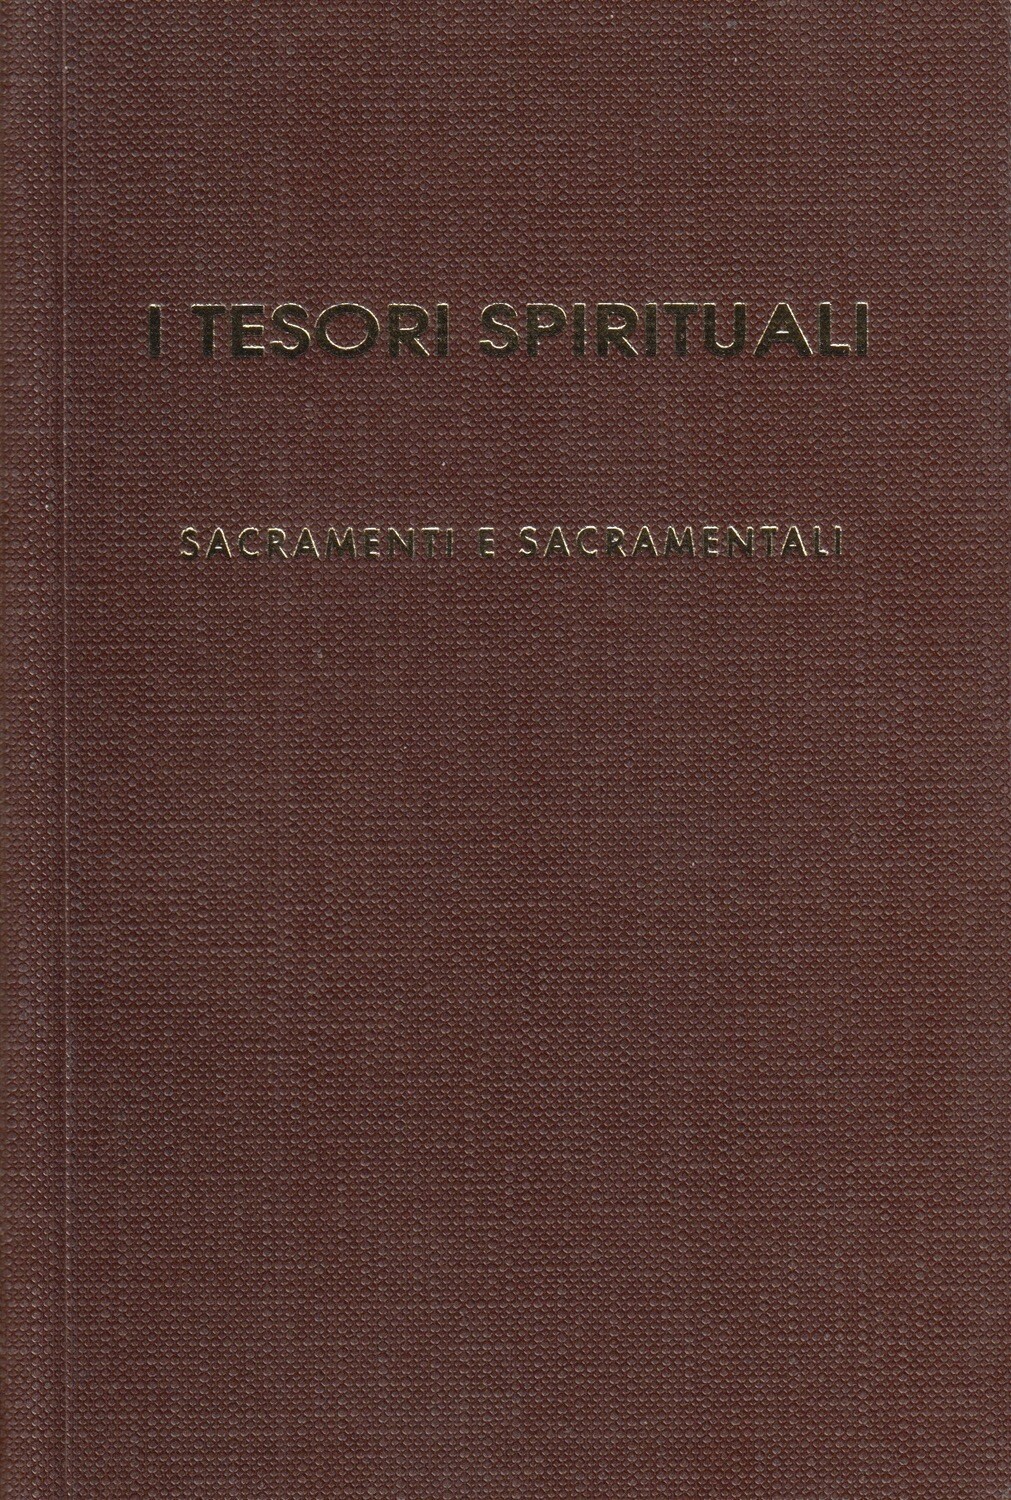 I tesori spirituali